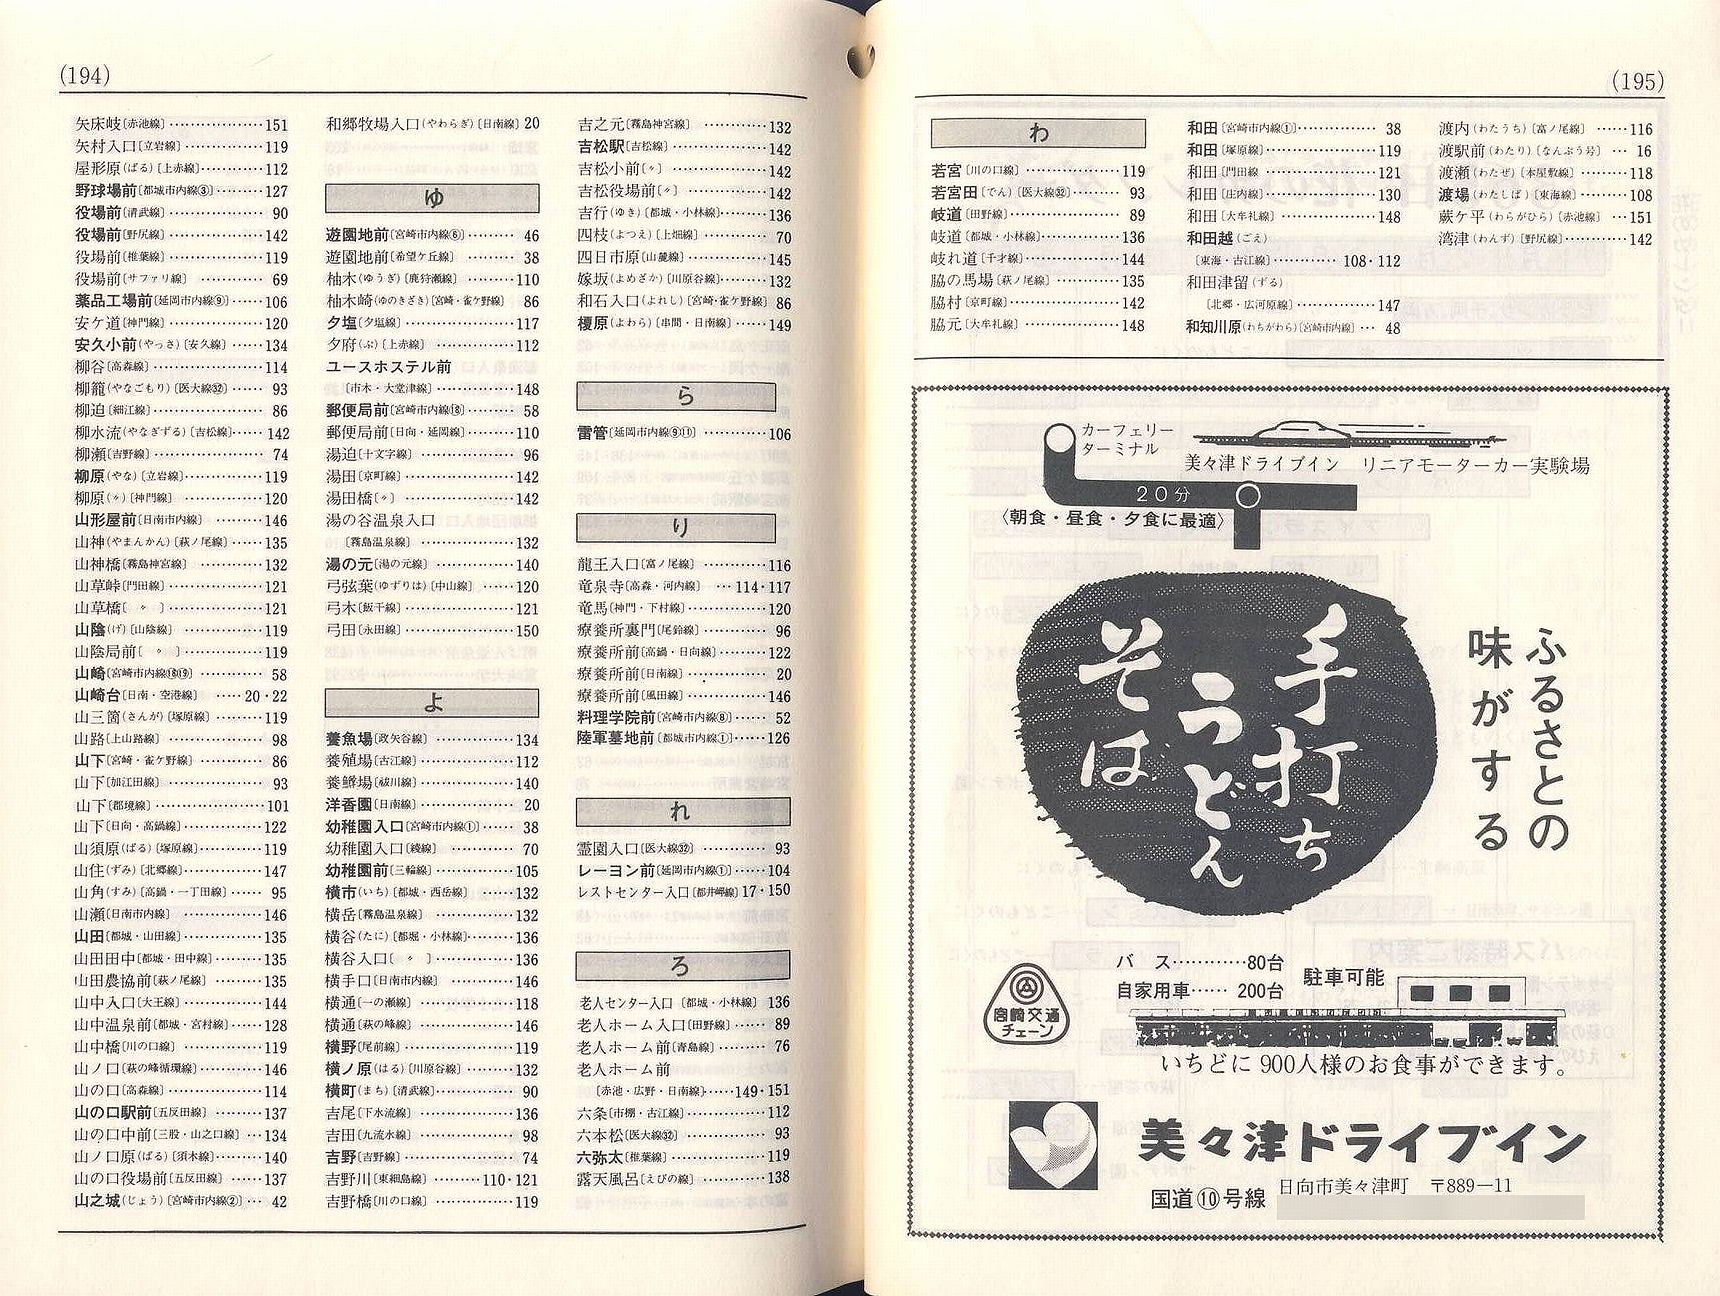 1984-10-01改正_宮崎交通_冊子時刻表_194